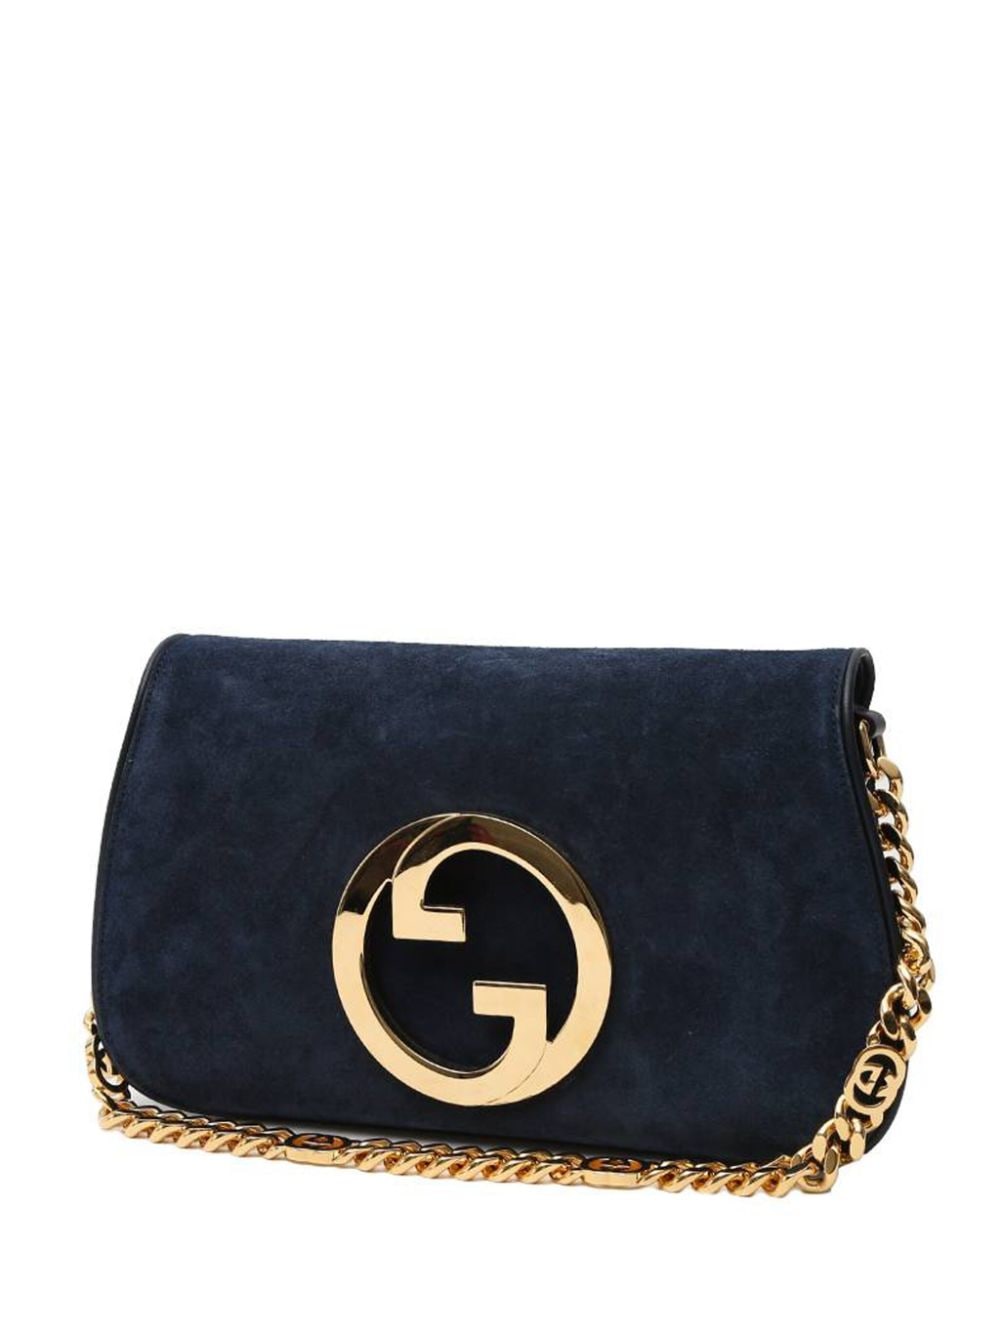 Pre-owned Gucci 2020s Blondie Handbag In Blue